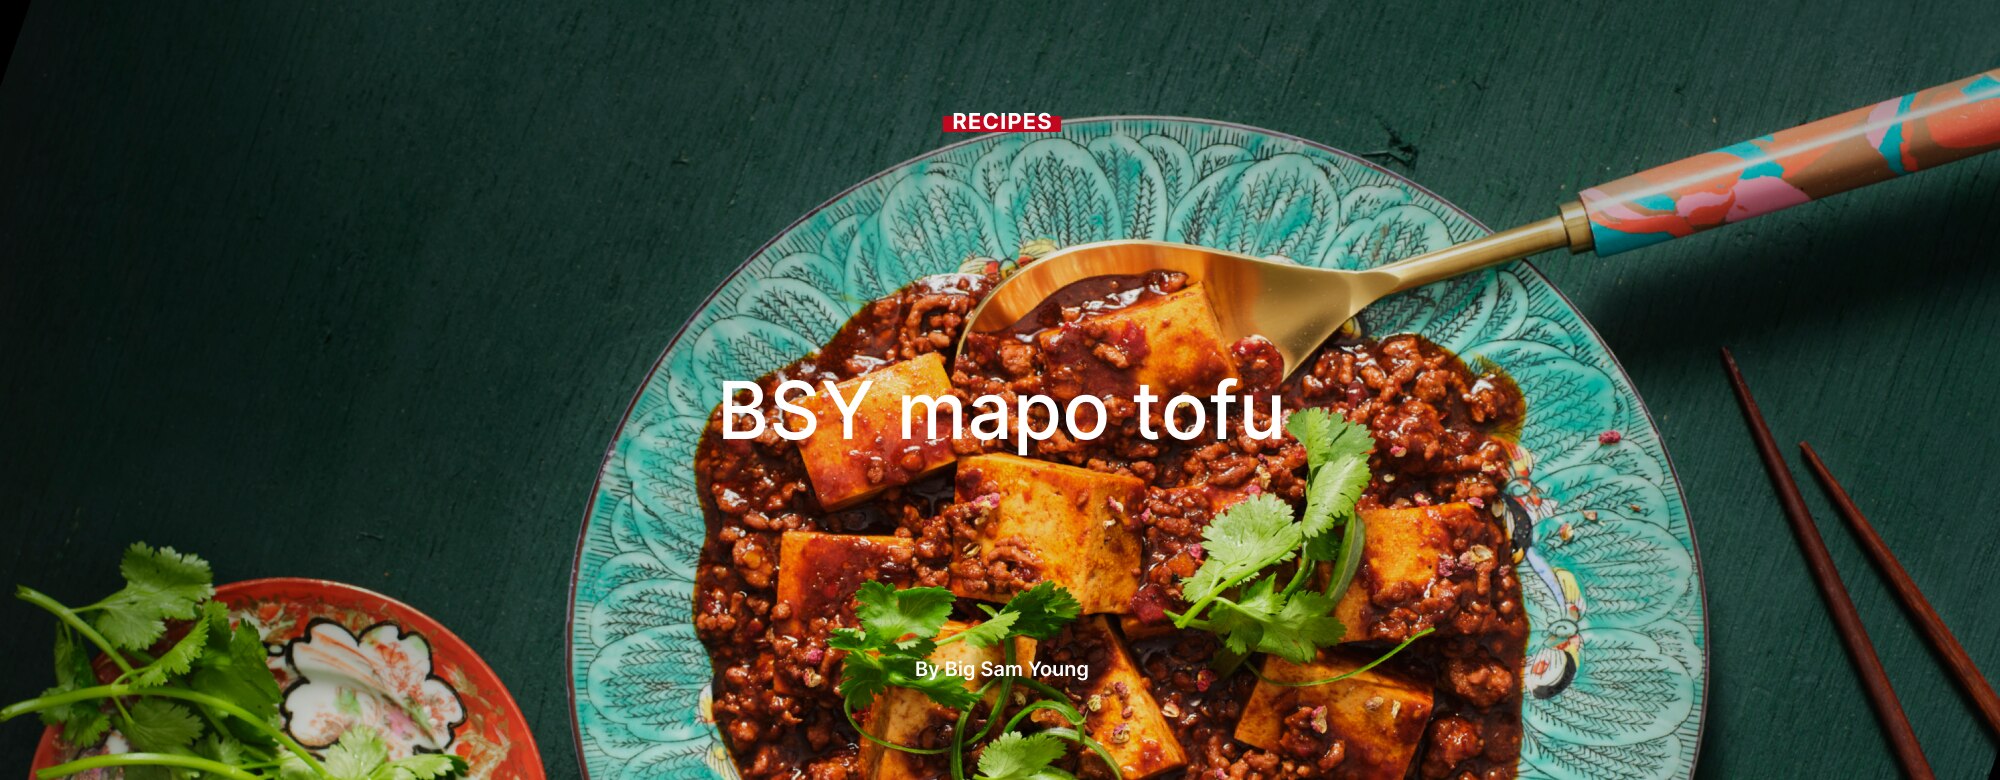 BSY mapo tofu